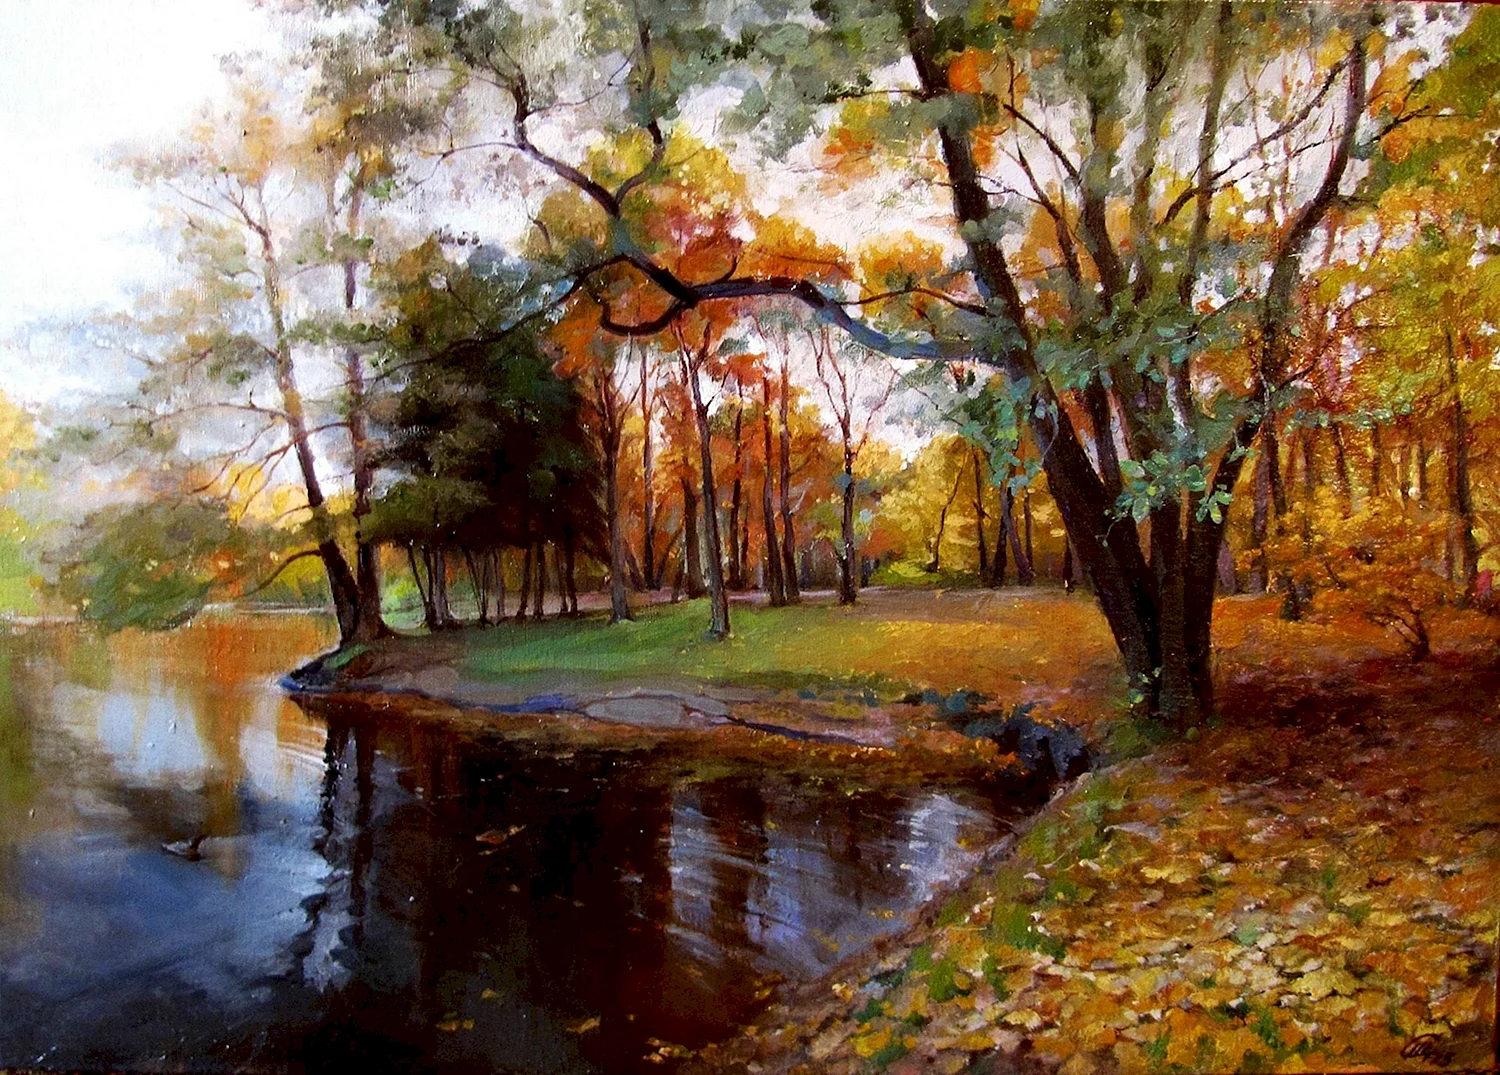 Осенний пейзаж живопись